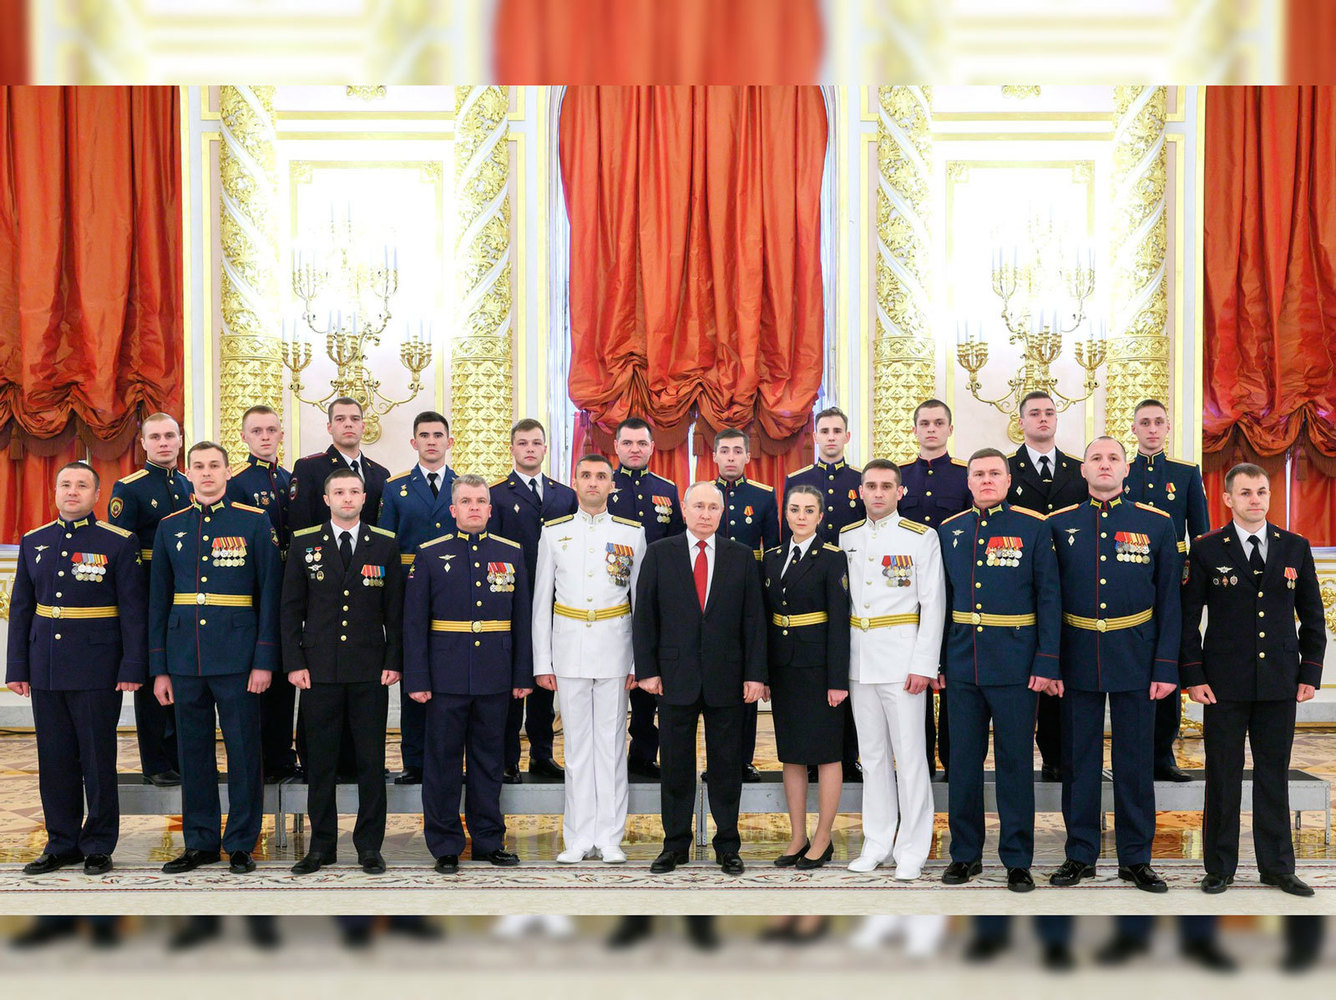 "Секретный подарок", шутки, рукопожатия: кадры встречи Путина с выпускниками военных вузов